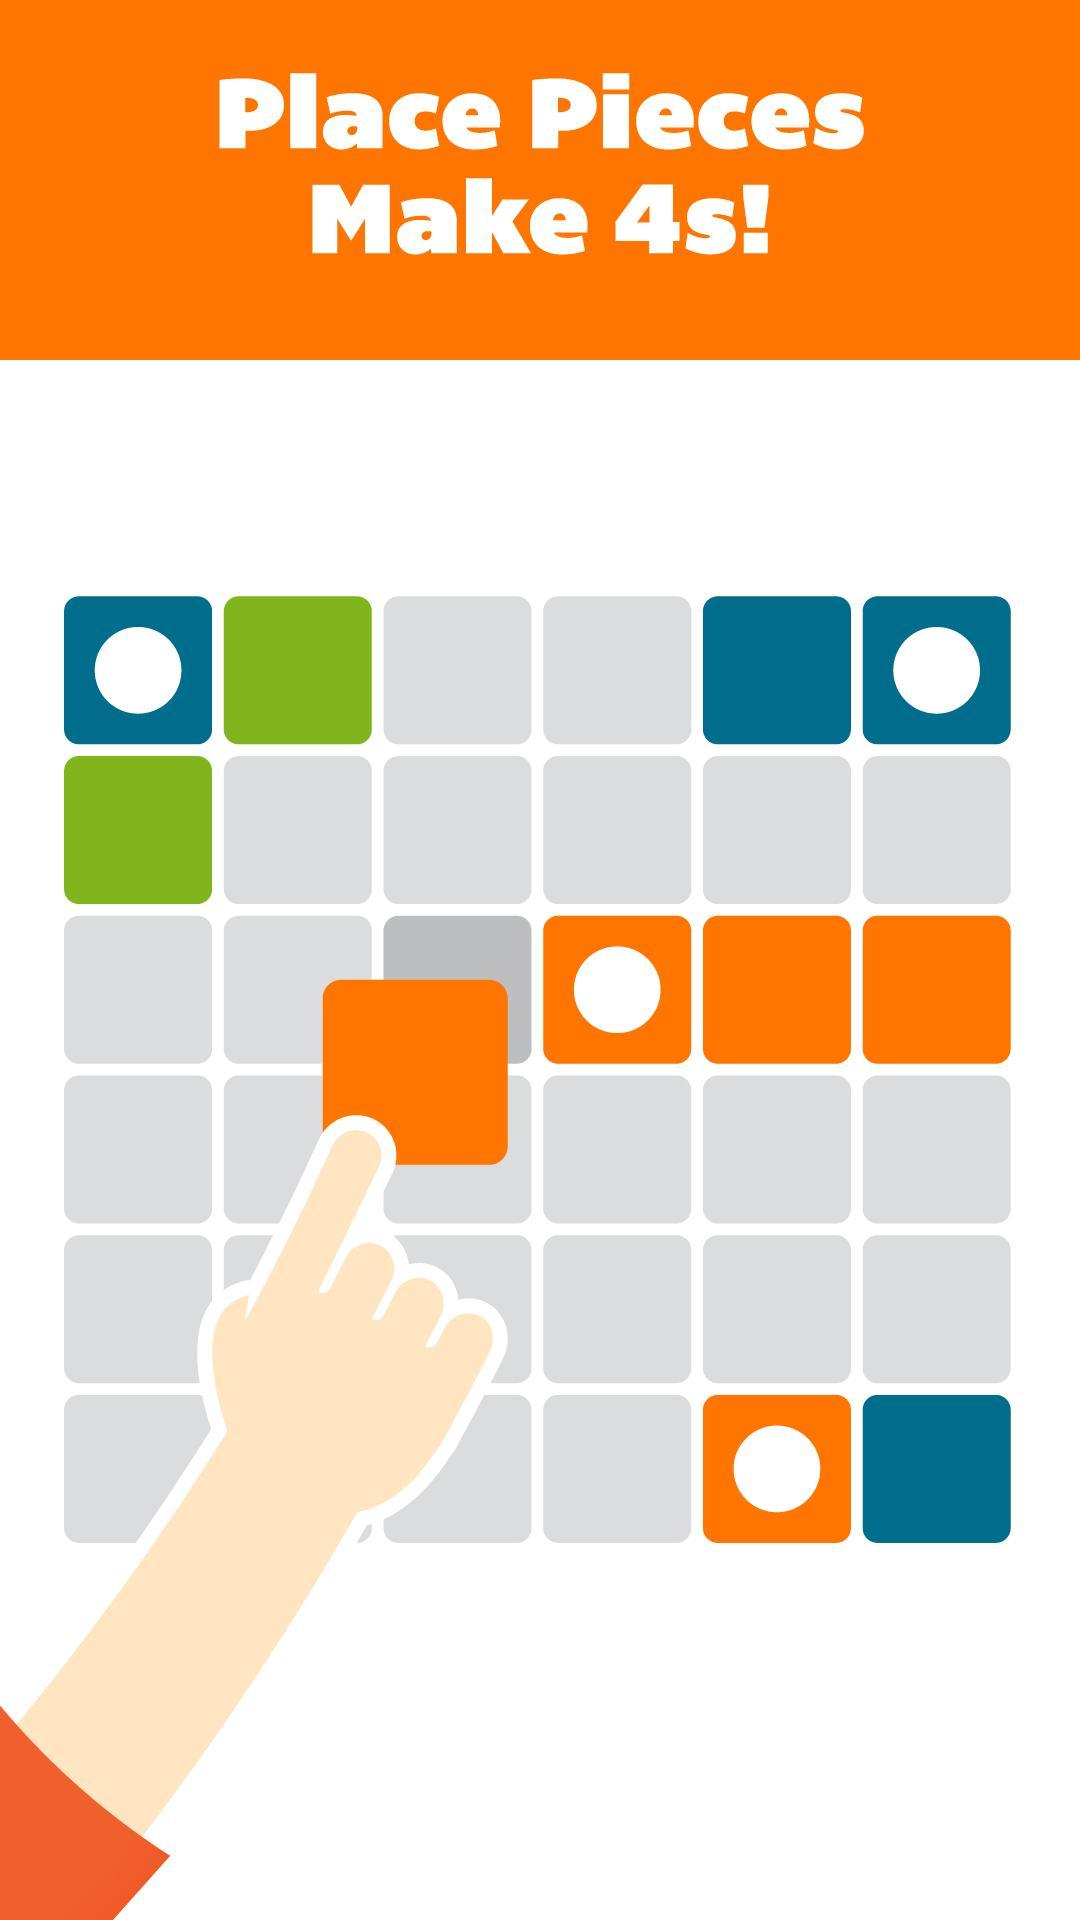 パズルゲーム : Foorのキャプチャ